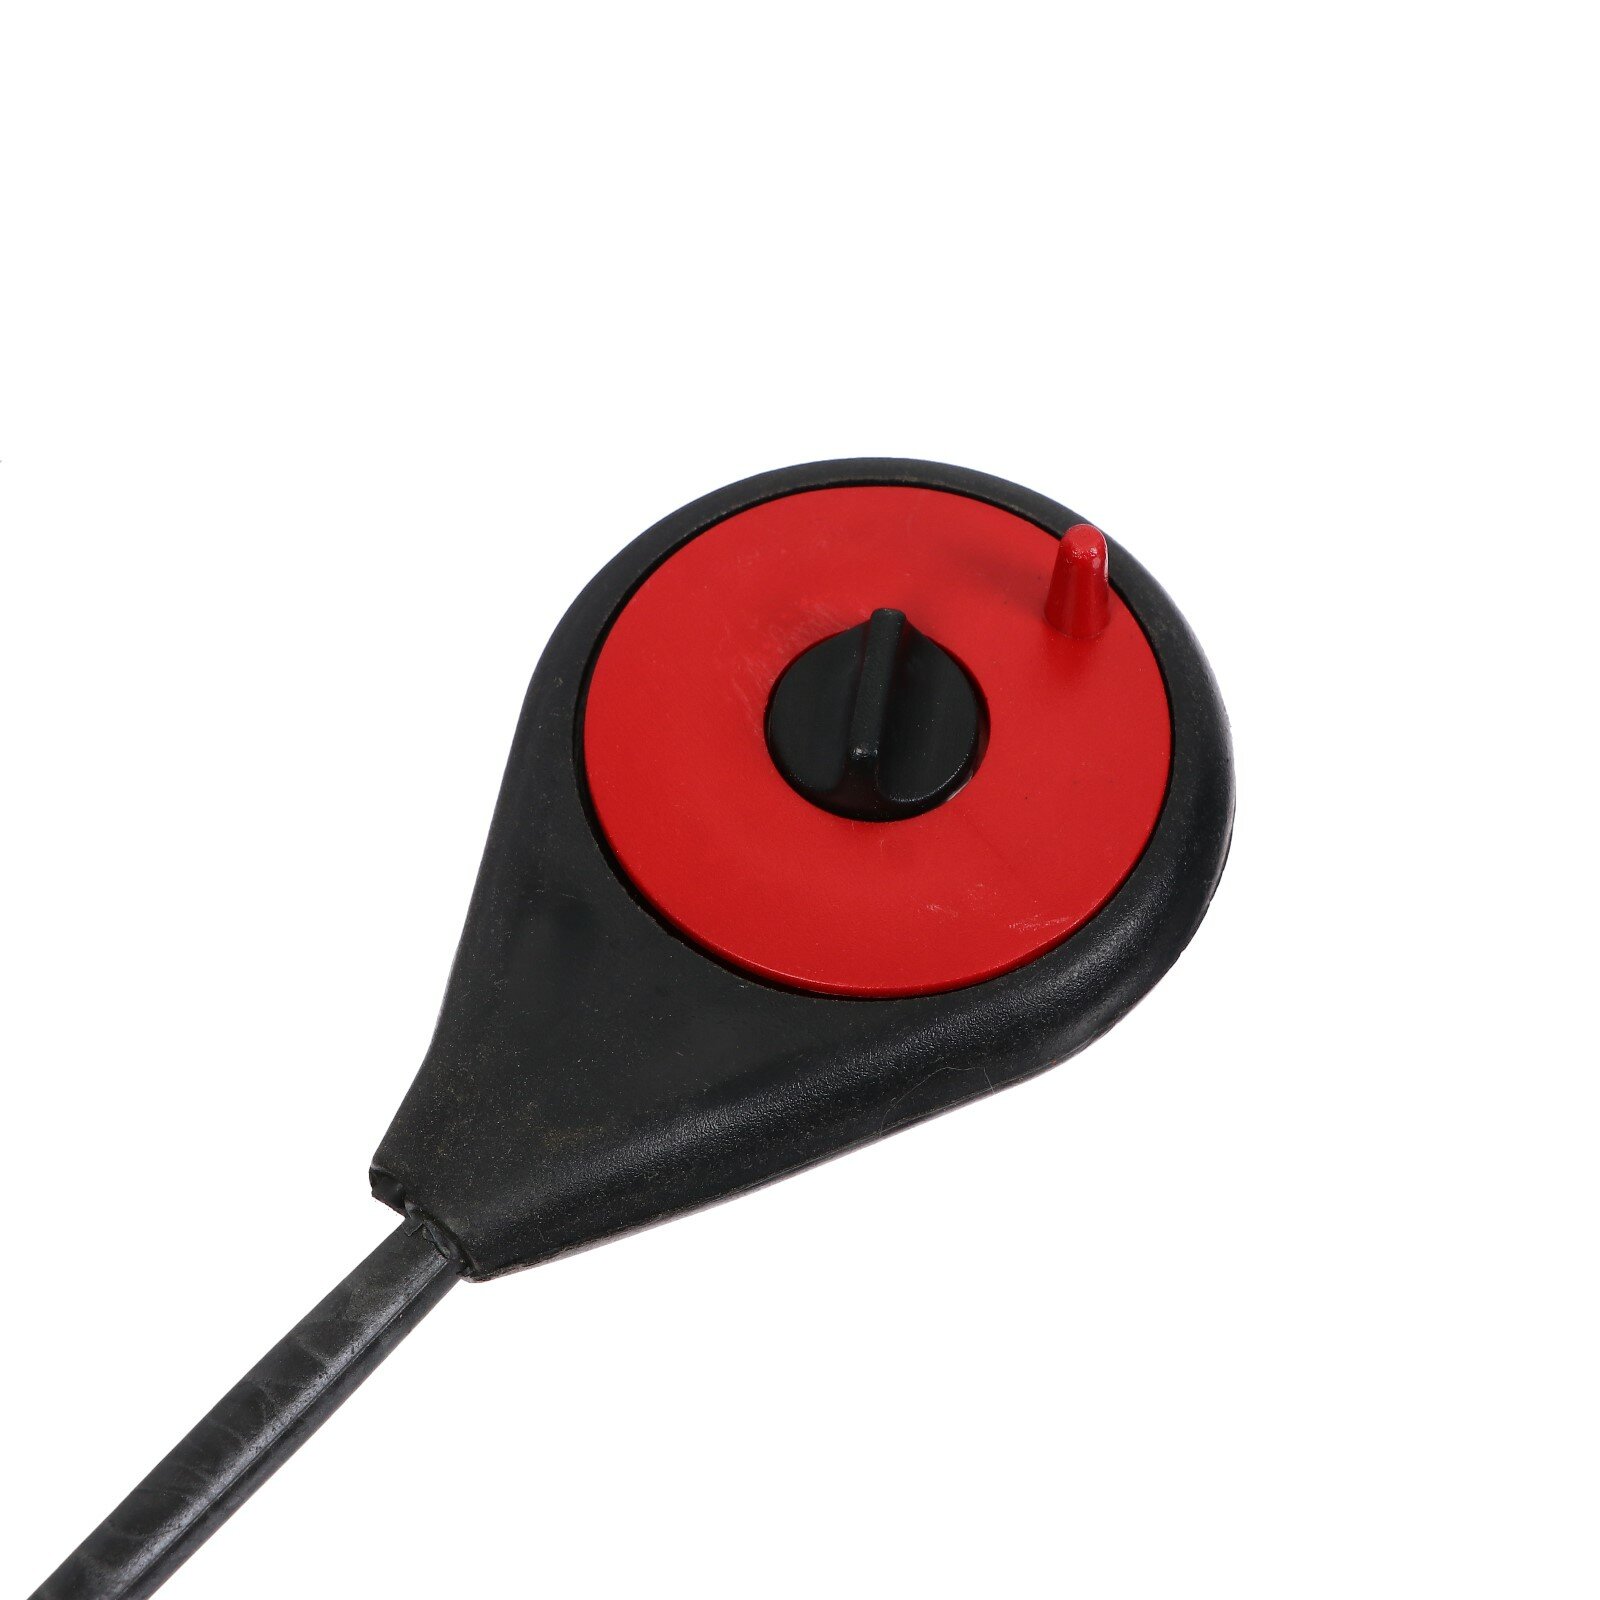 Удочка зимняя балалайка, диаметр катушки 4.5 см, цвет черный красный, HFB-18 9913154